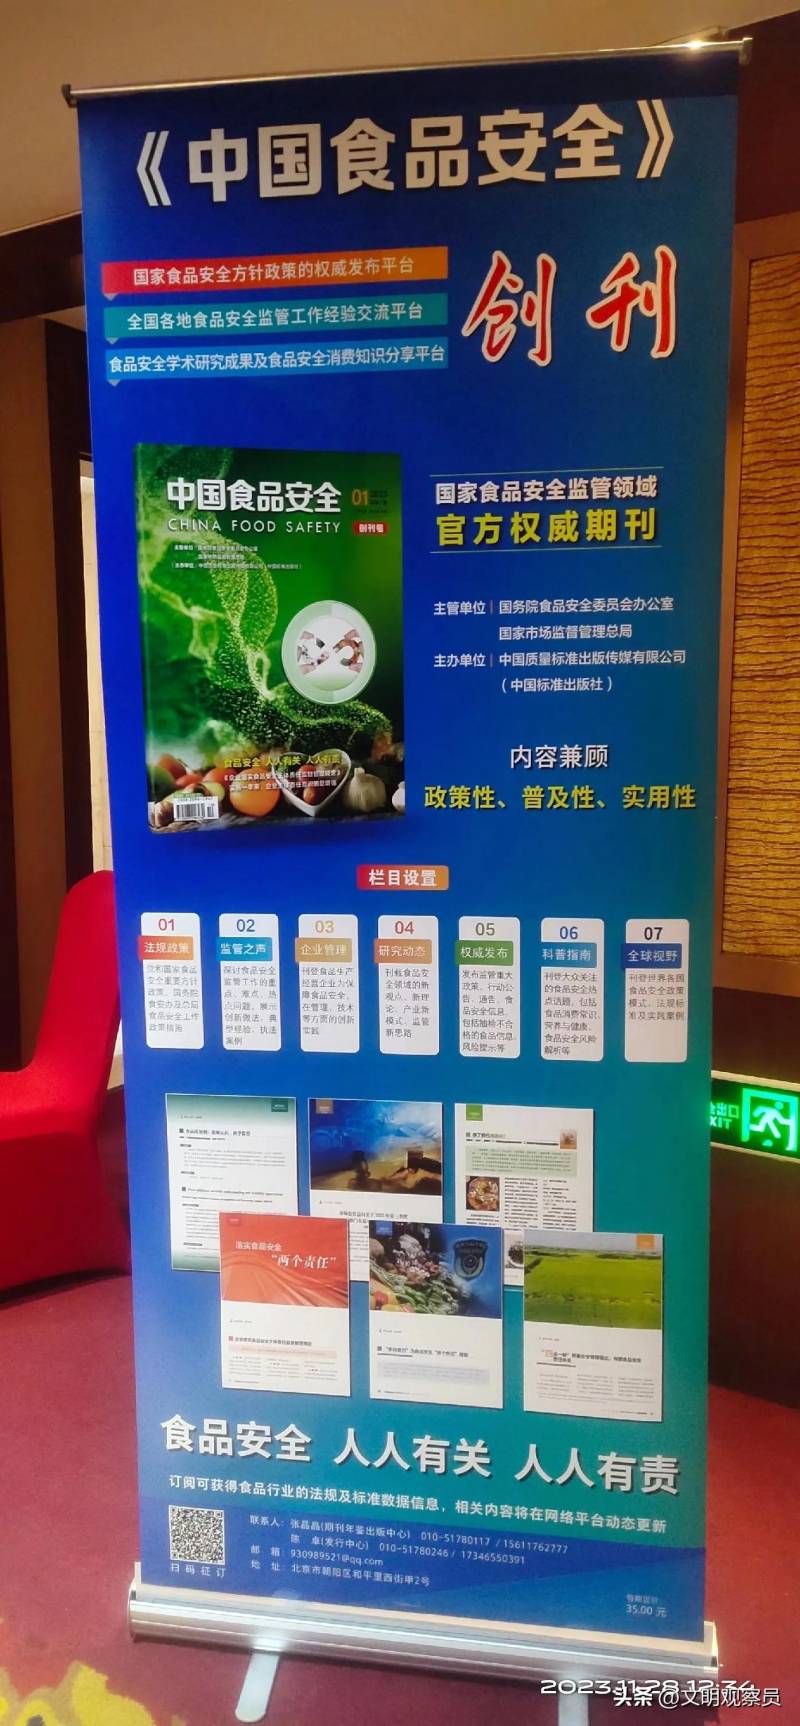 中國食品安全報社的微博，助力食品安全宣傳 守護公衆健康